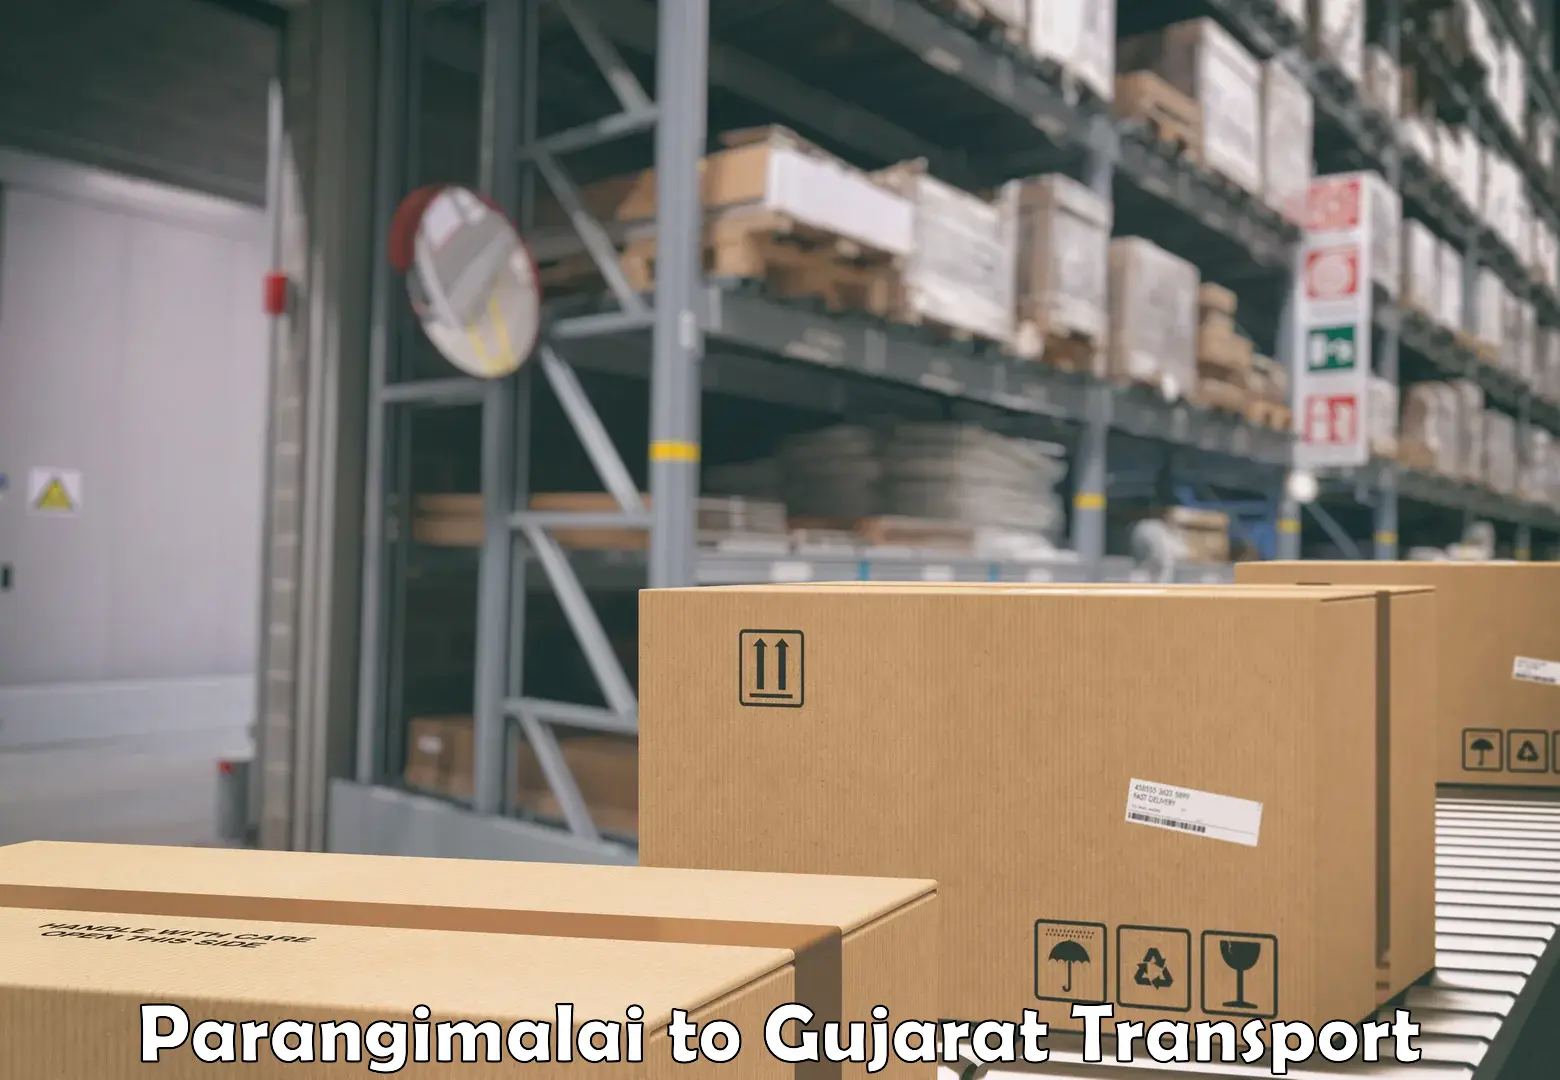 Furniture transport service Parangimalai to Kandla Port